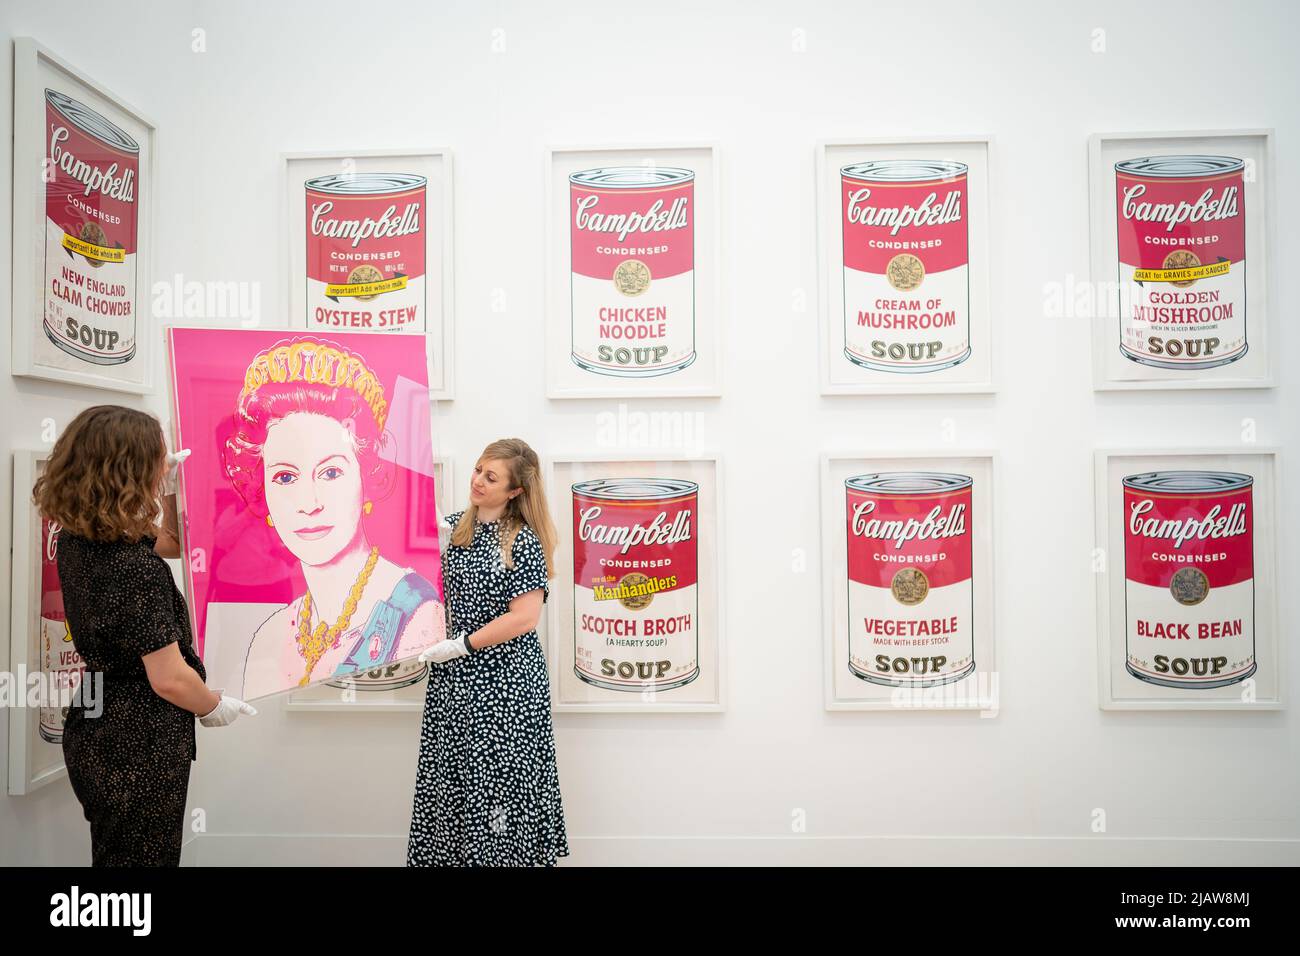 Andy Warhols Queen Elizabeth II. Vom Vereinigten Königreich-Siebdruck, der vor Campbells Suppendosen im Phillips Auktionshaus im Zentrum von London ausgestellt wird, bevor er bei einer Auktion angeboten wird, wo er voraussichtlich £100.000 bis 150.000 erreicht. Bilddatum: Mittwoch, 1. Juni 2022. Stockfoto